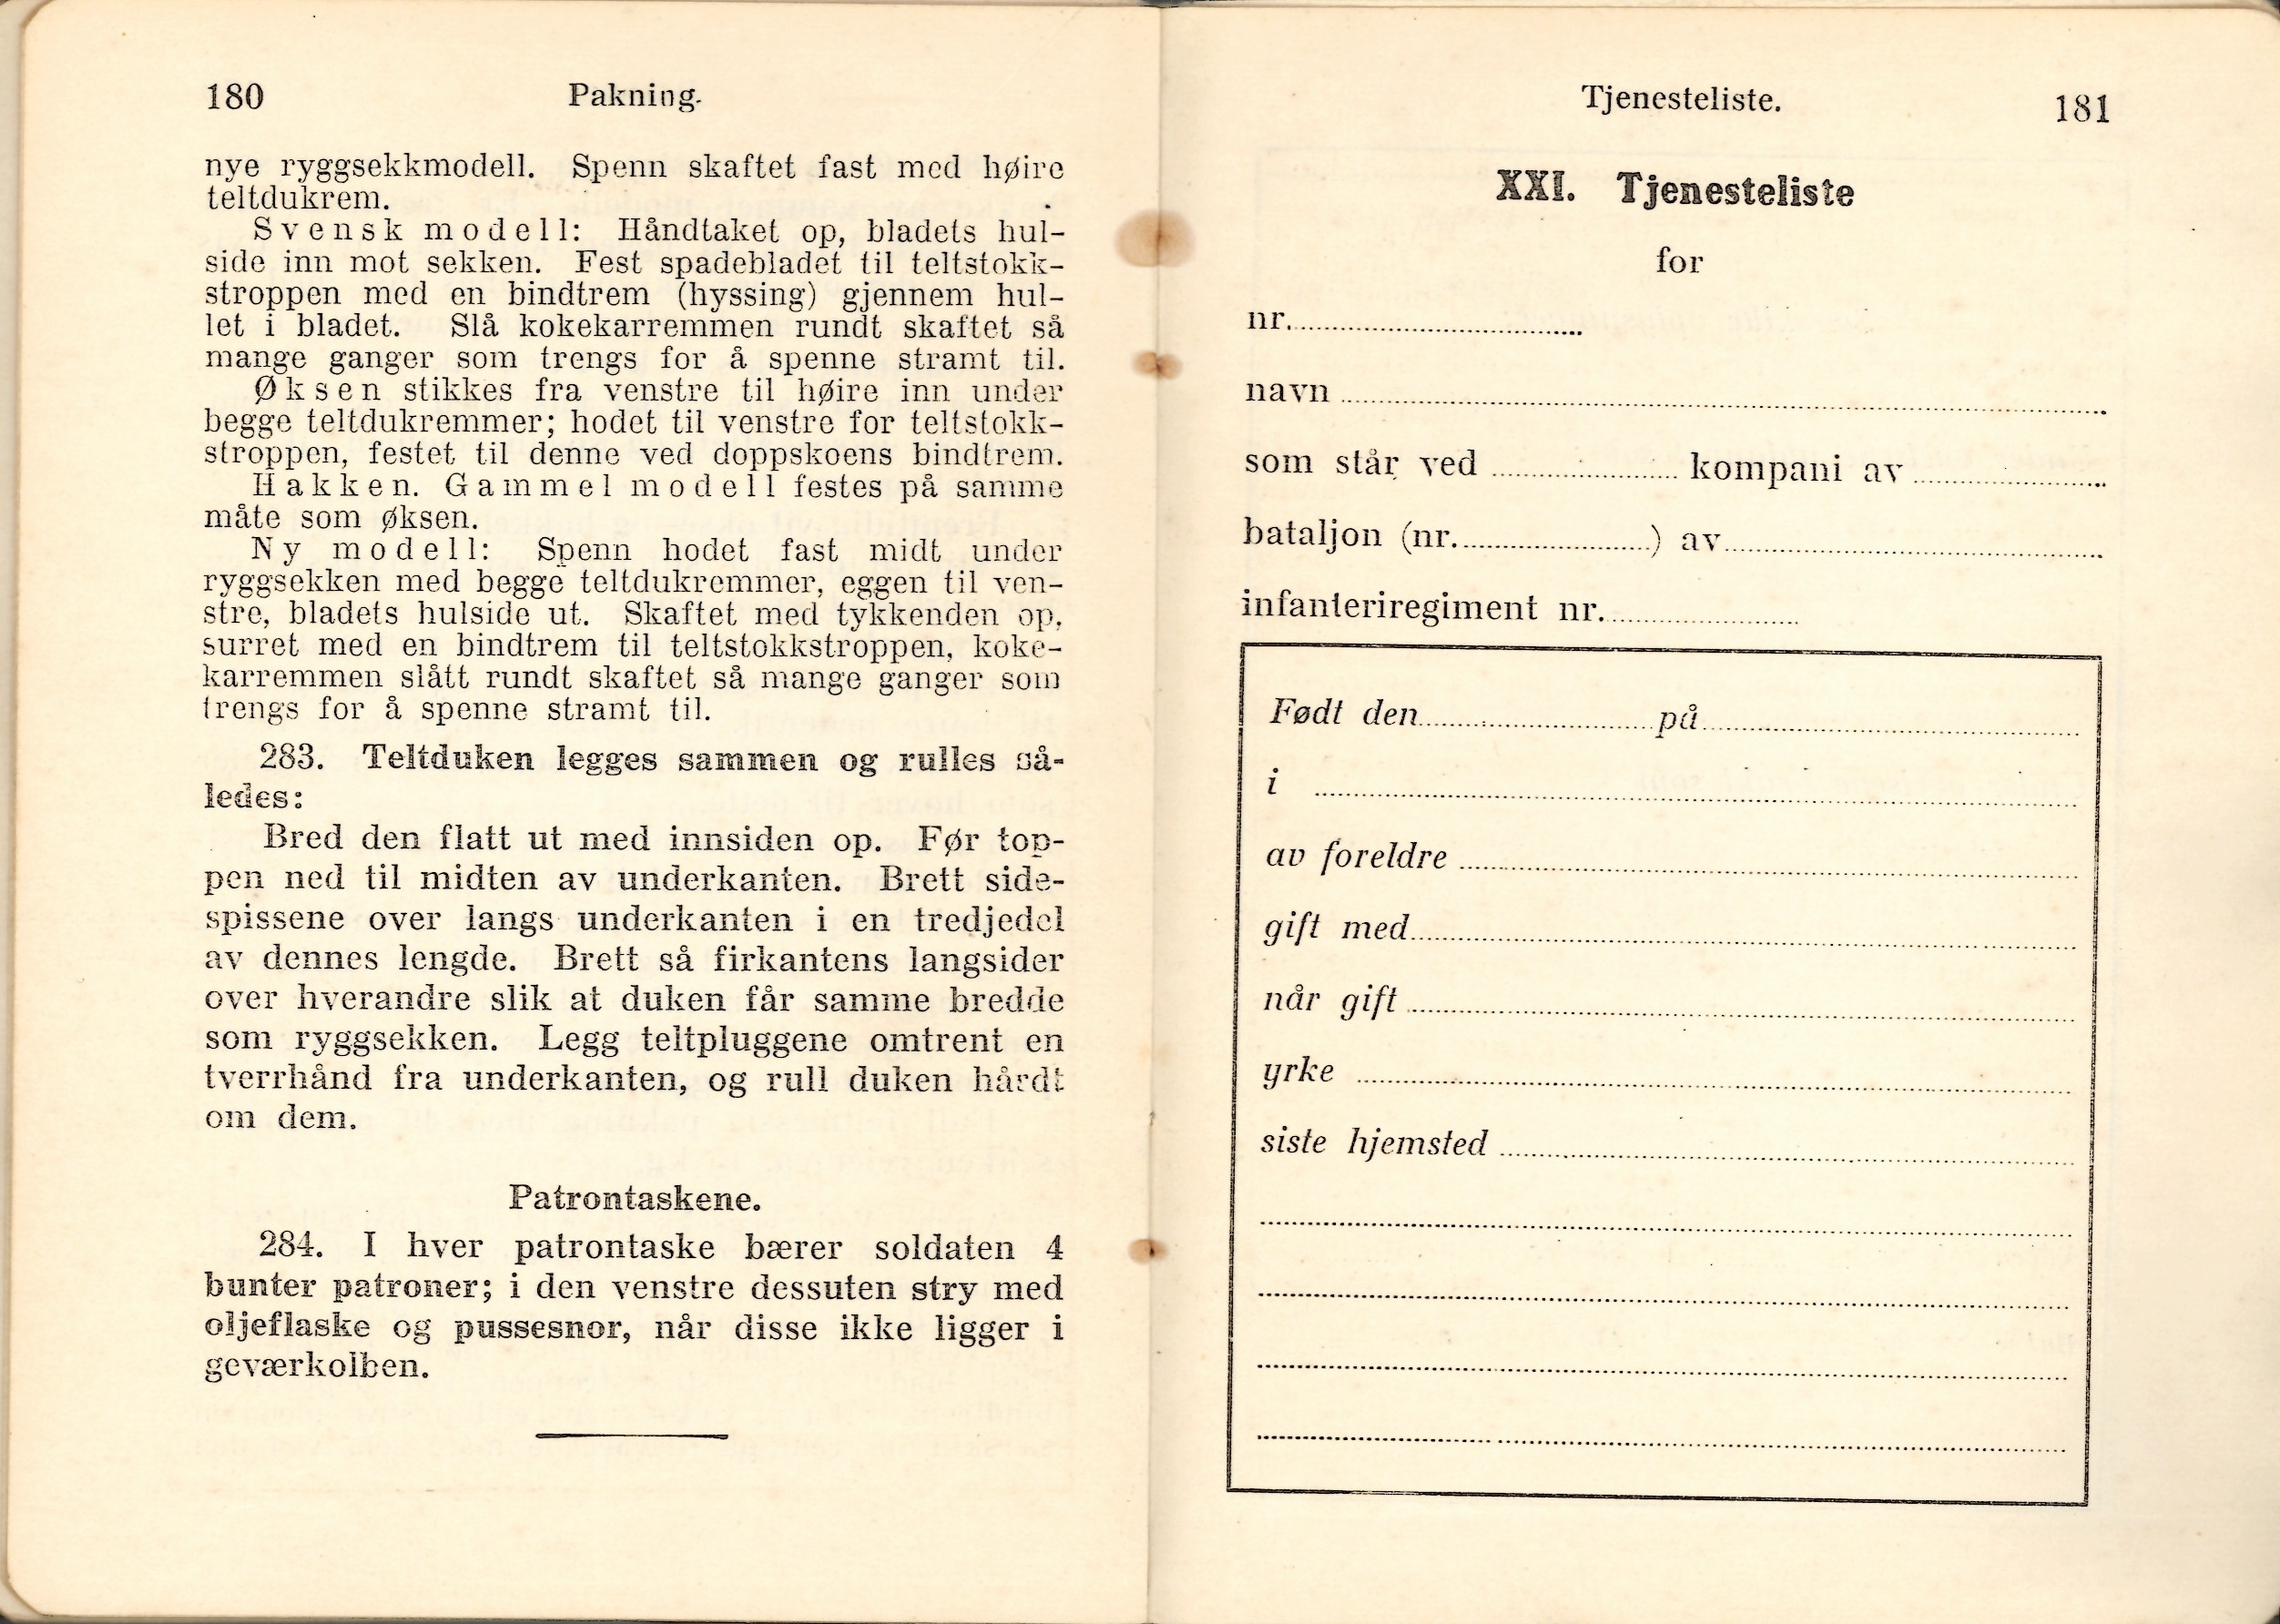 ./doc/reglement/Haandbok1925/Haandbok-for-infanteristen-1925-31.jpg